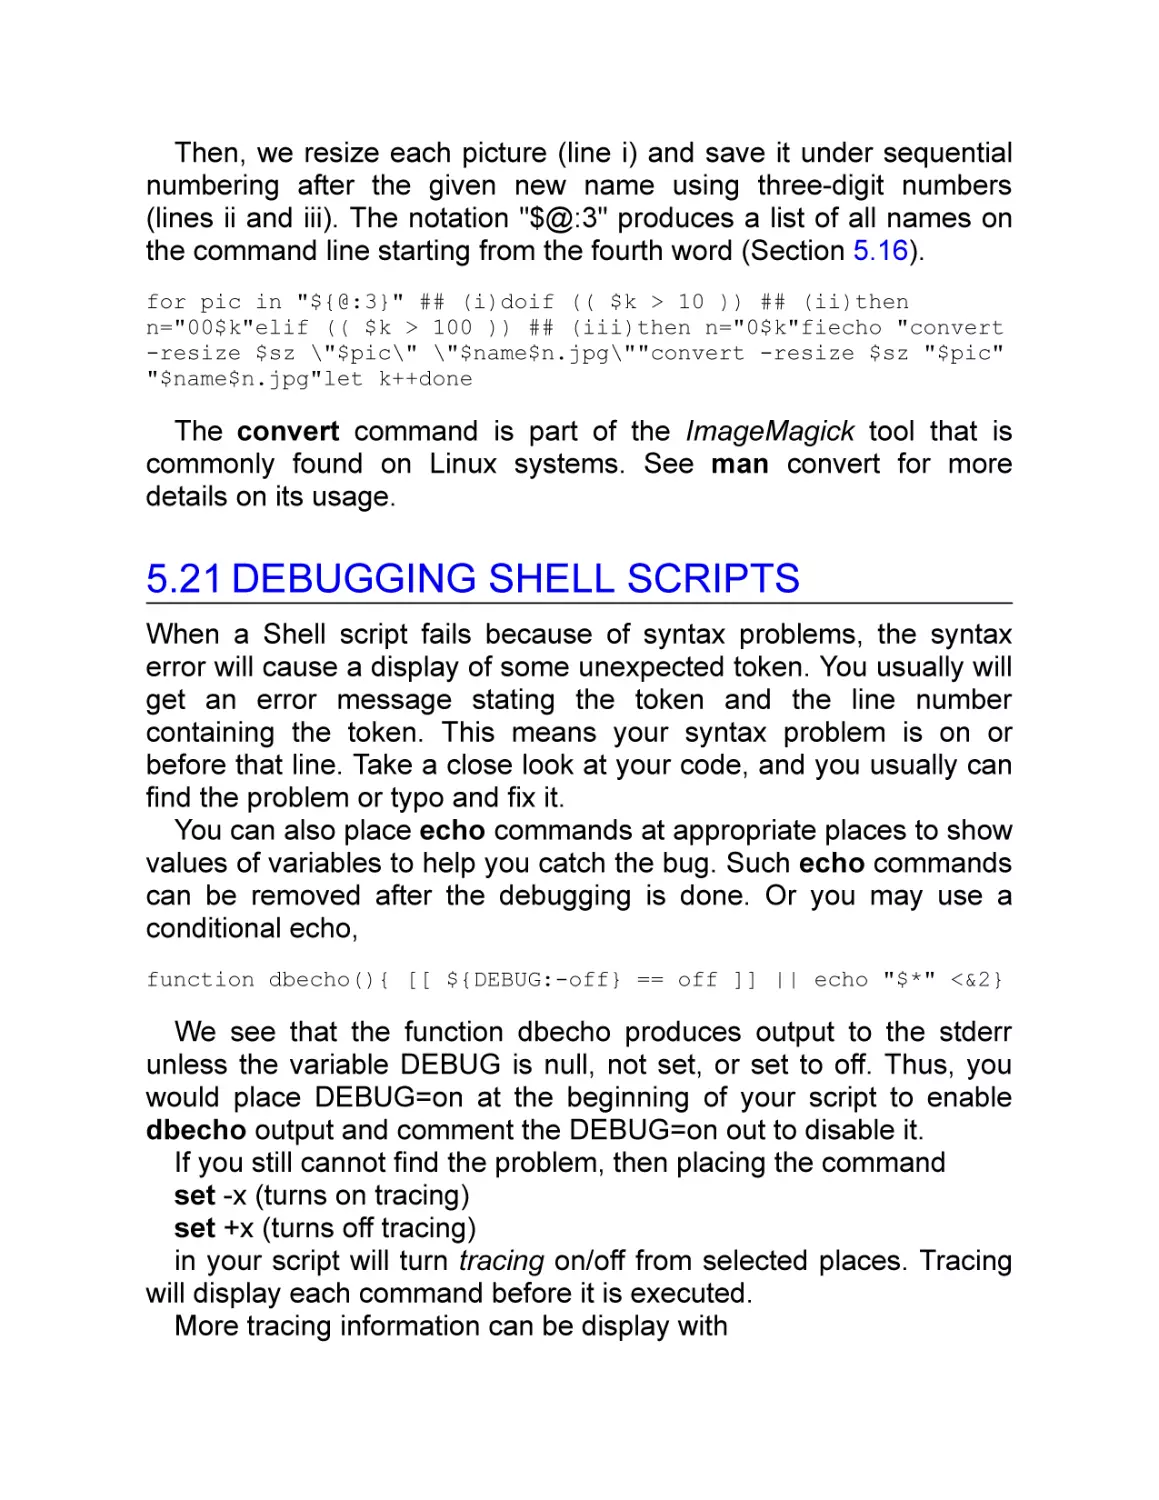 5.21 Debugging Shell Scripts